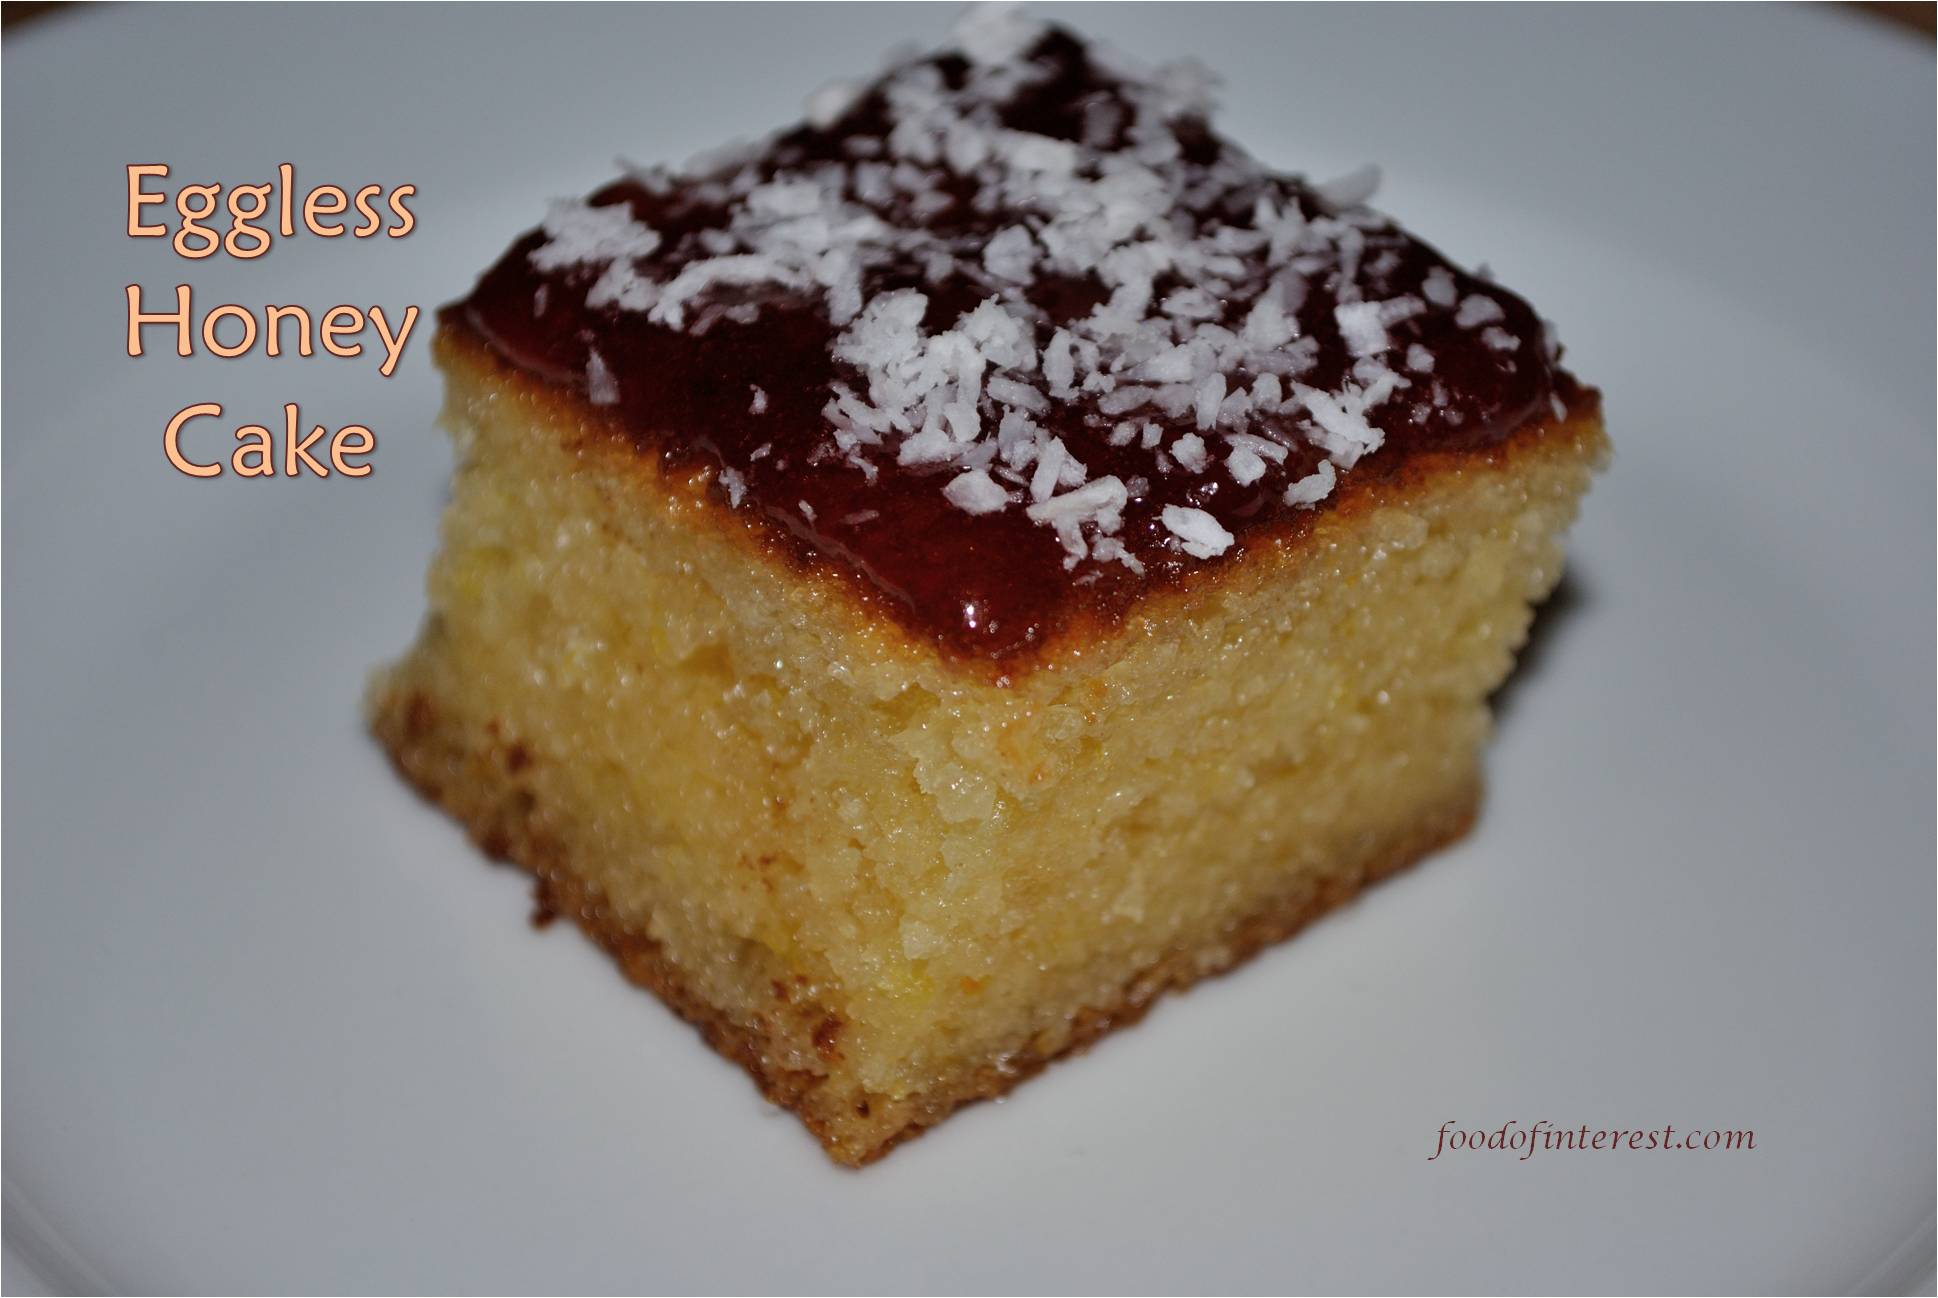 Medovnik Czech Honey Cake - Cook Like Czechs